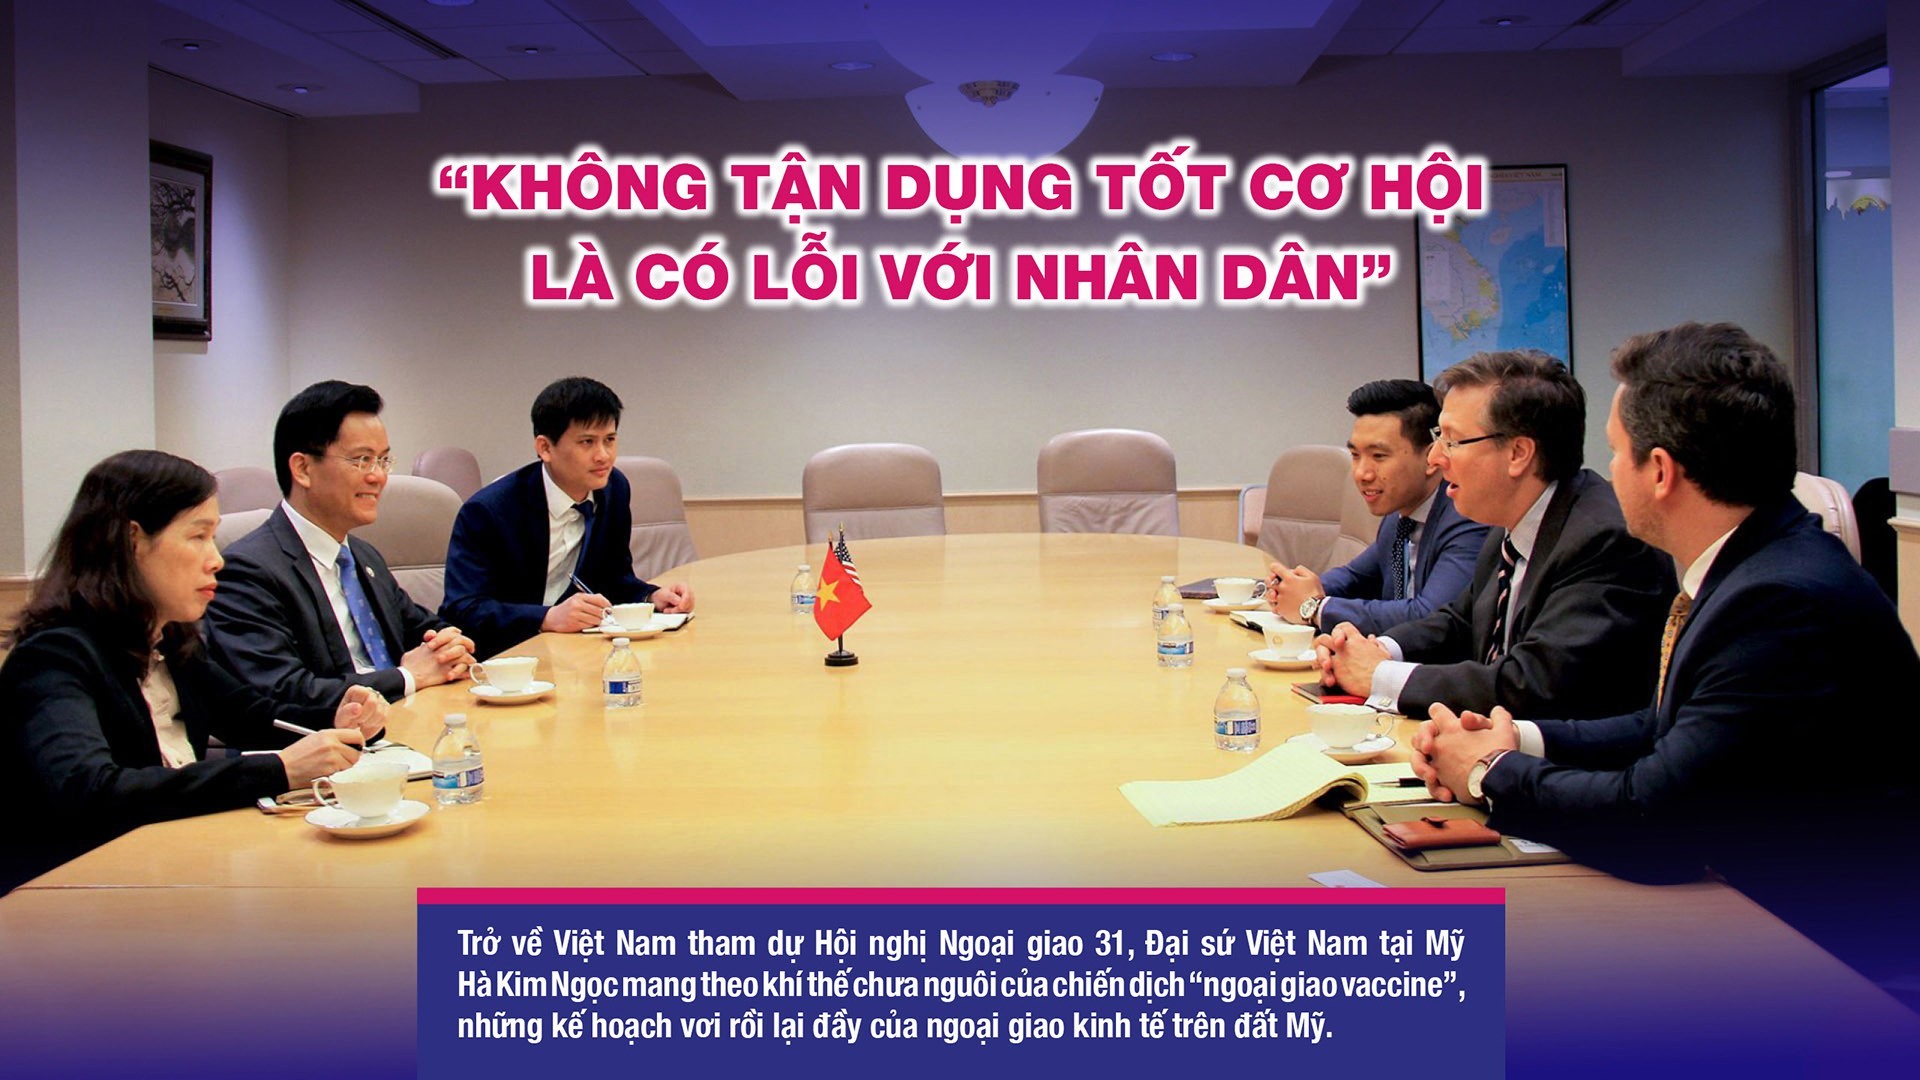 Đại sứ Hà Kim Ngọc: 'Không tận dụng tốt cơ hội là có lỗi với nhân dân'